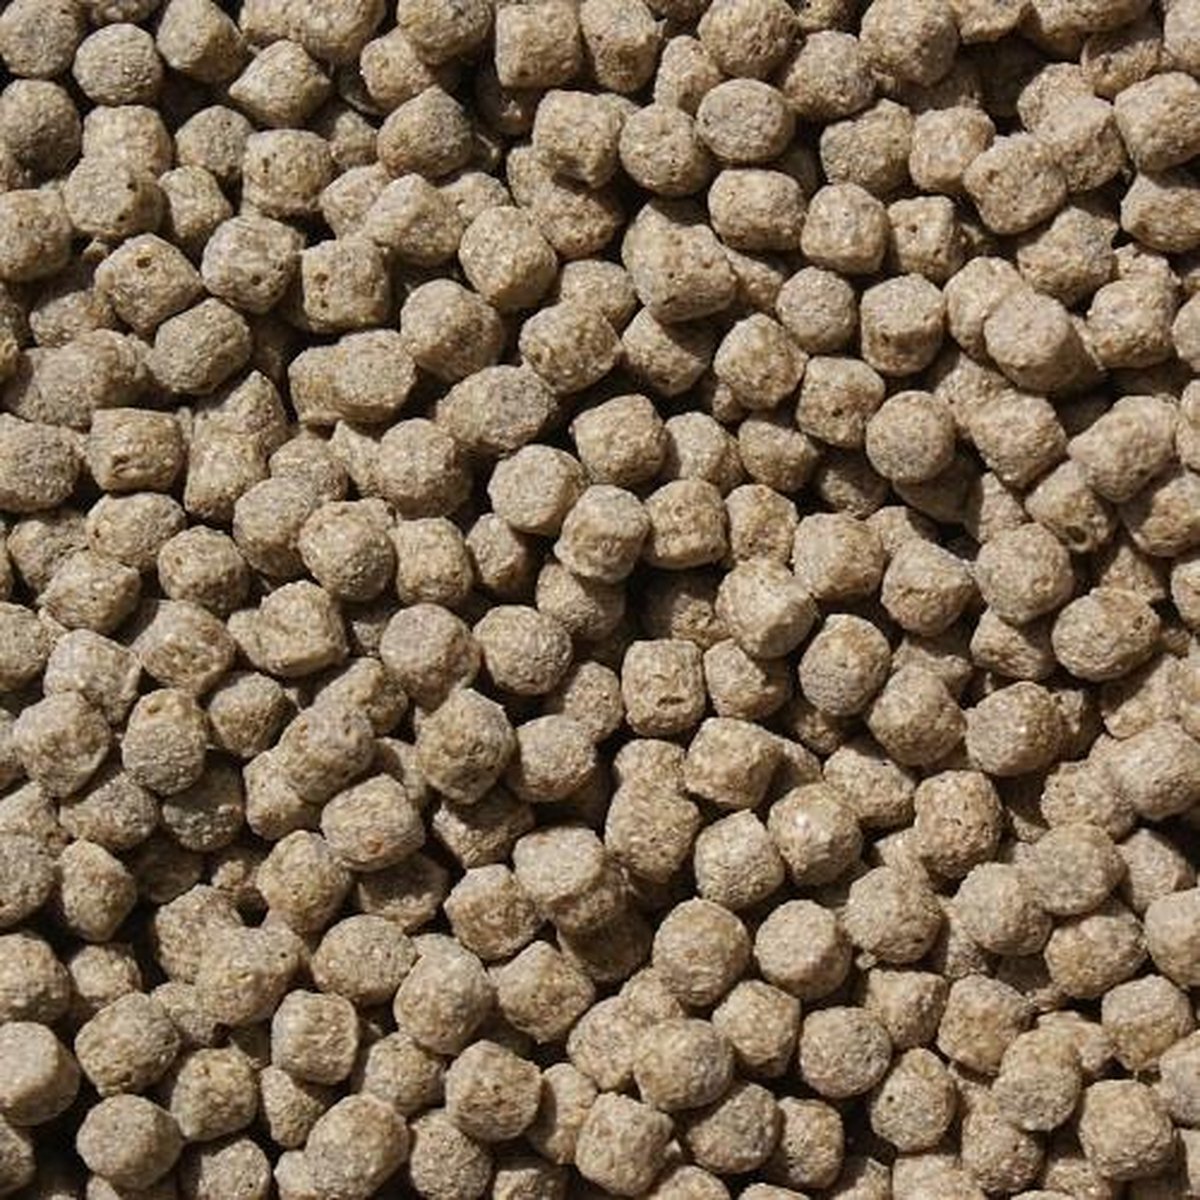 Koivoer Wheat Germ (15KG)(3mm) - Wintervoer